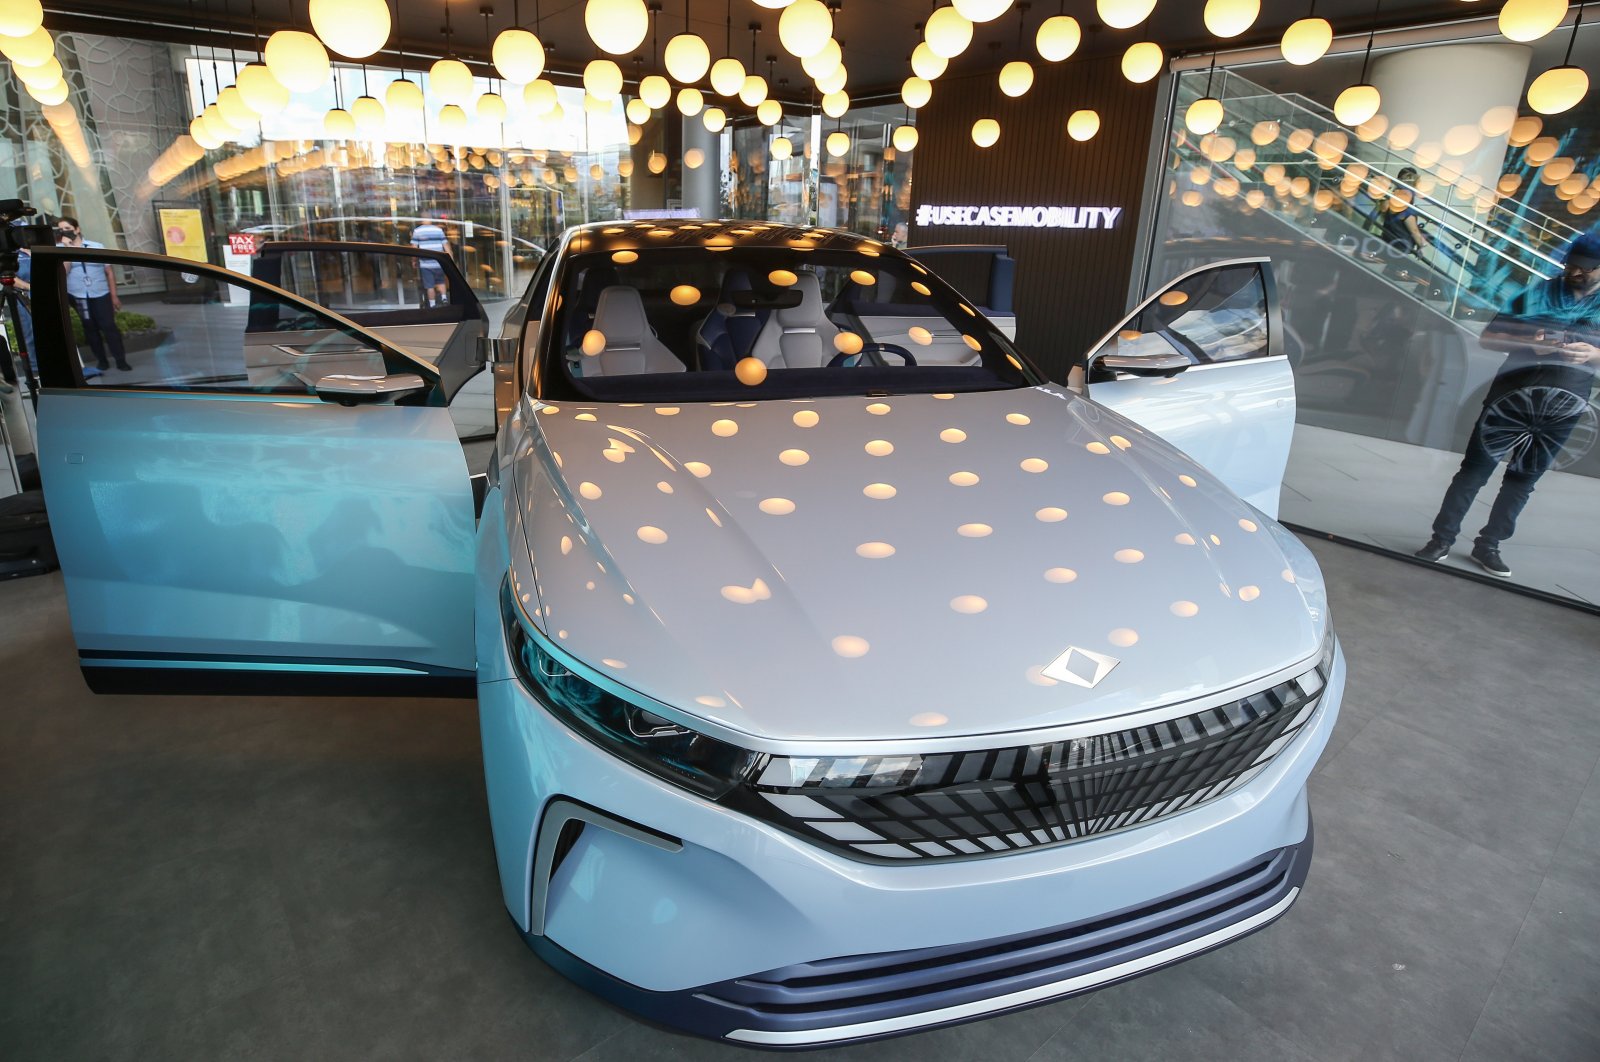 Togg Turki pamerkan mobil konsep pintar di Istanbul